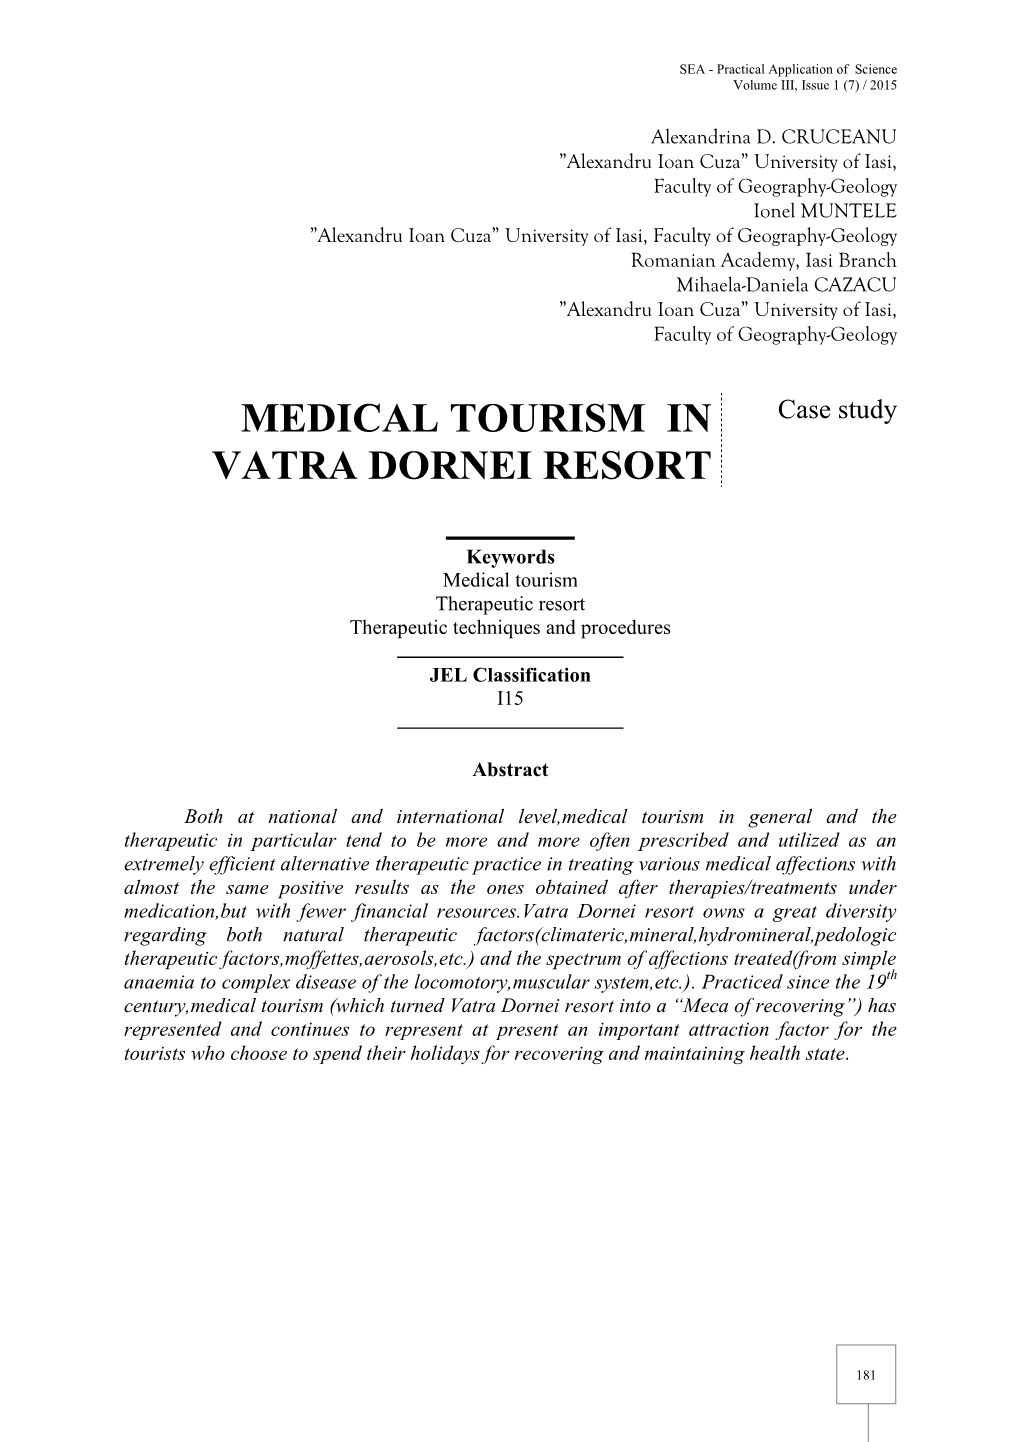 Medical Tourism in Vatra Dornei Resort